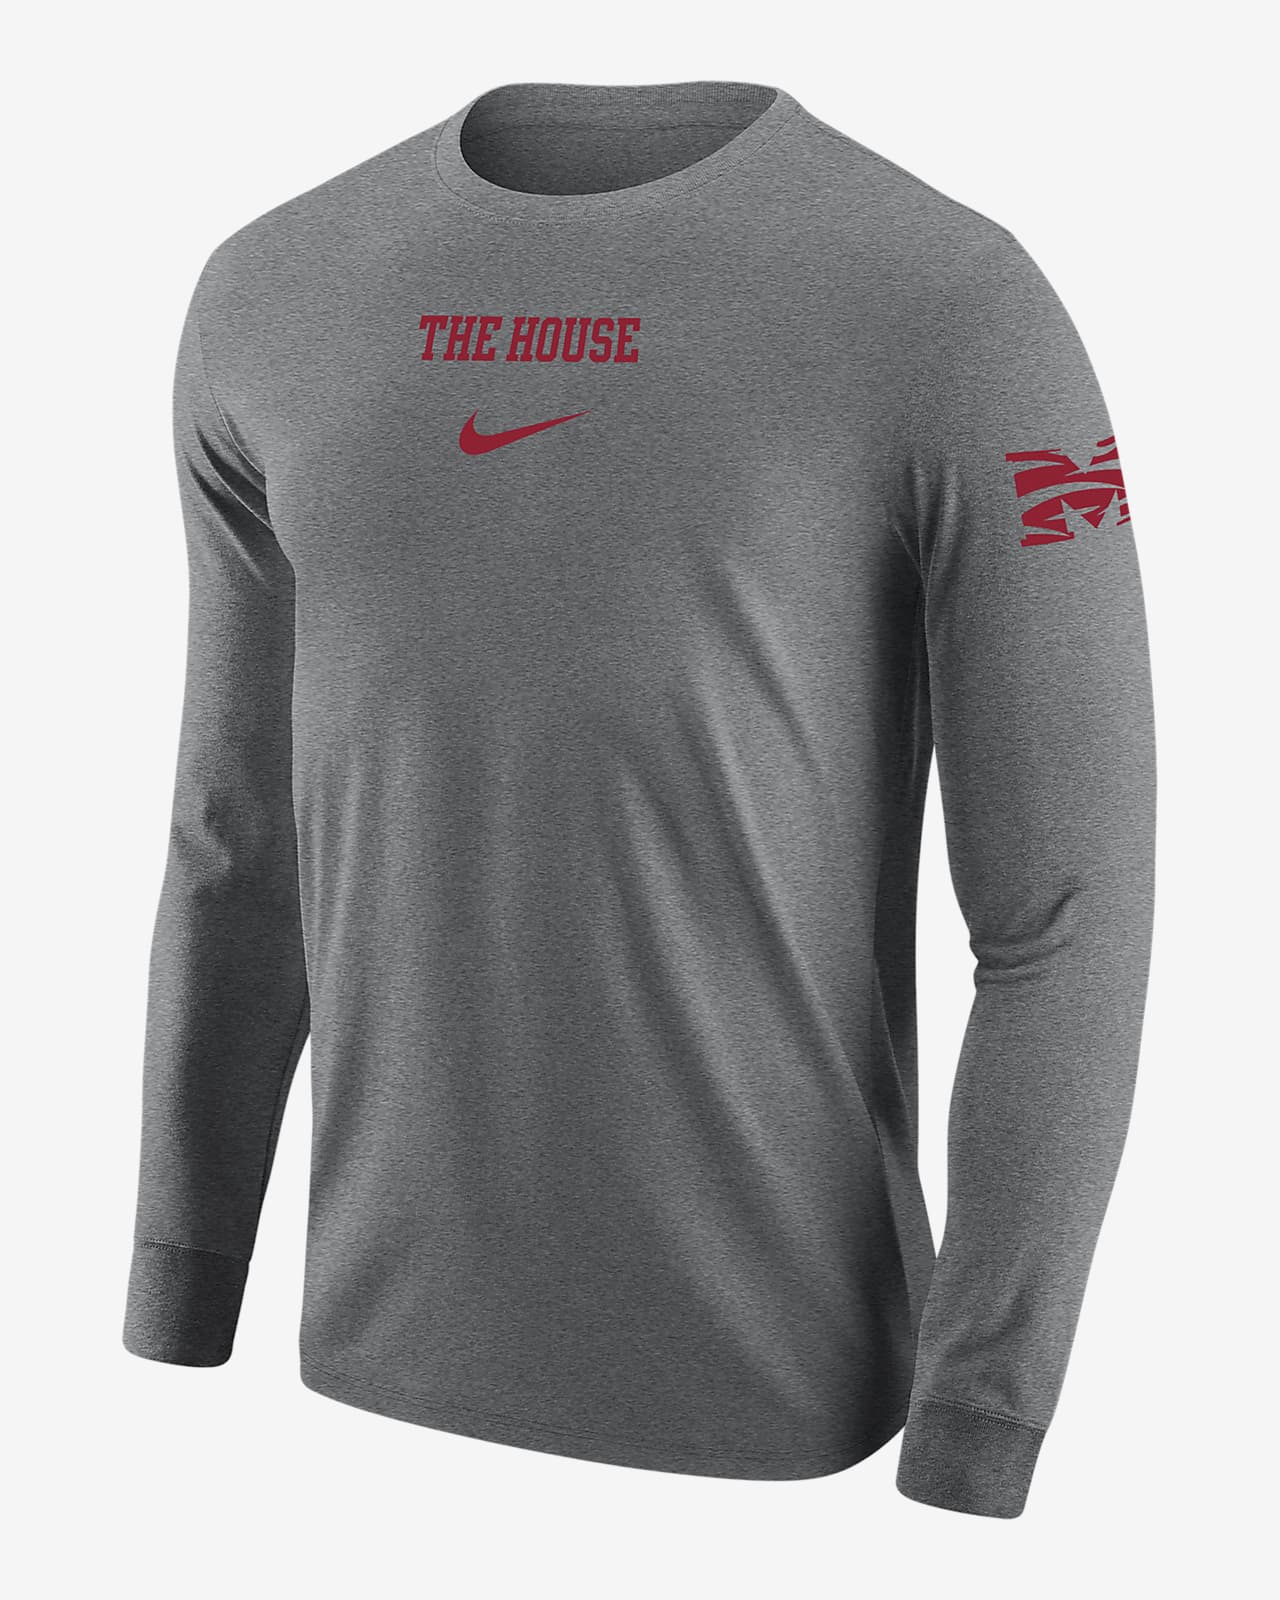 Morehouse Men's Nike College Long-Sleeve T-Shirt